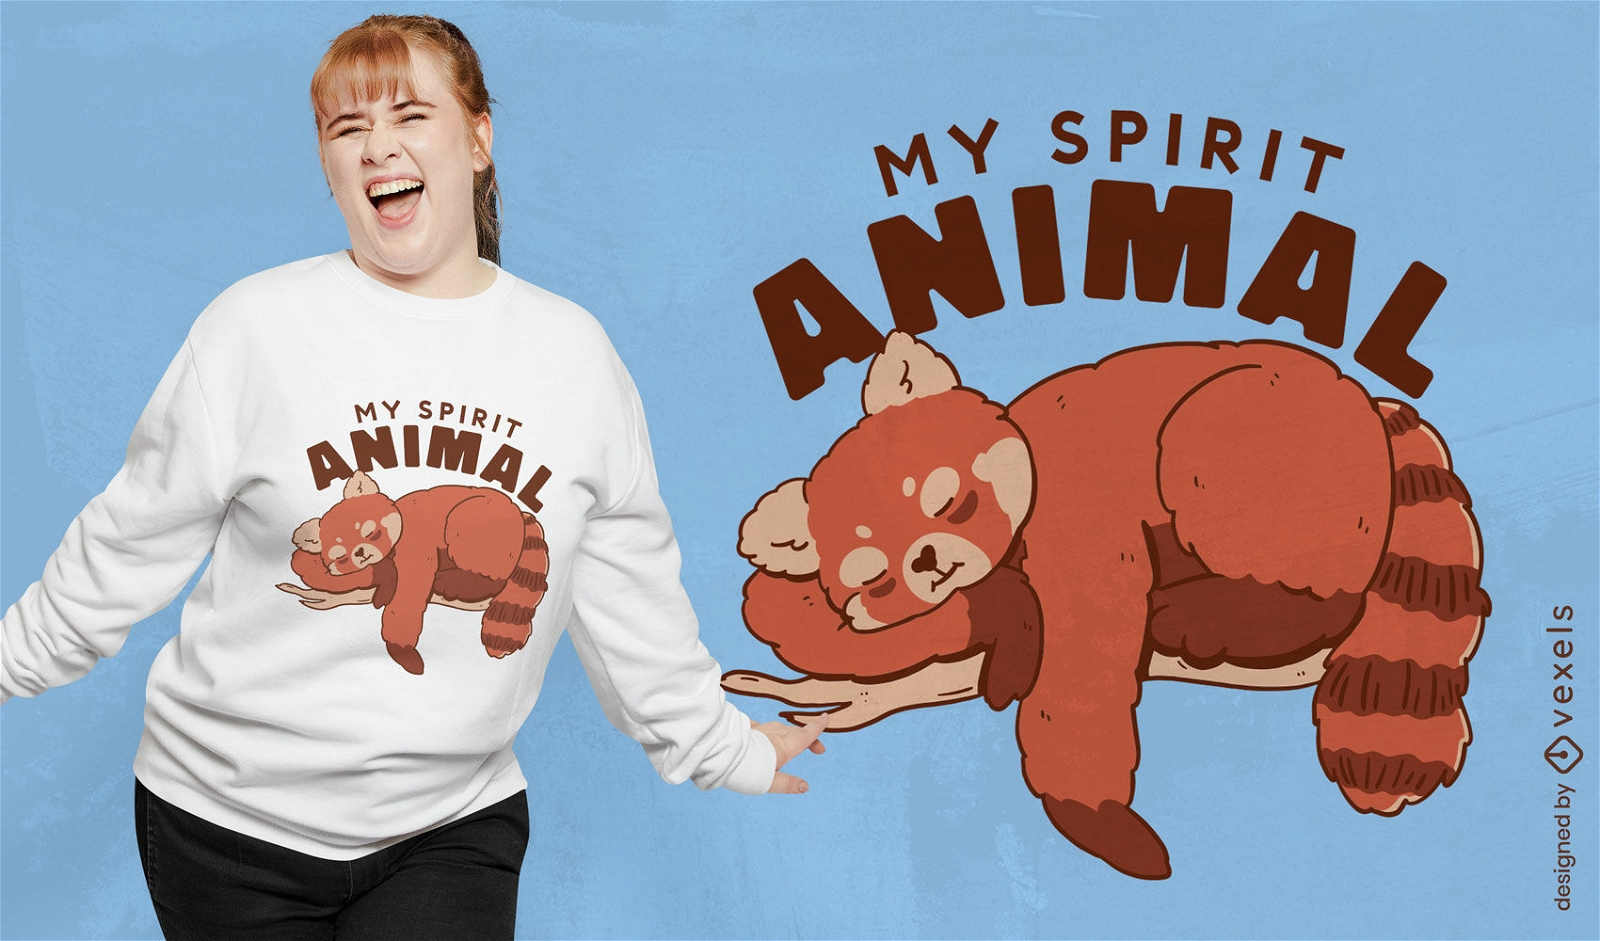 Red panda spirit t-shirt design